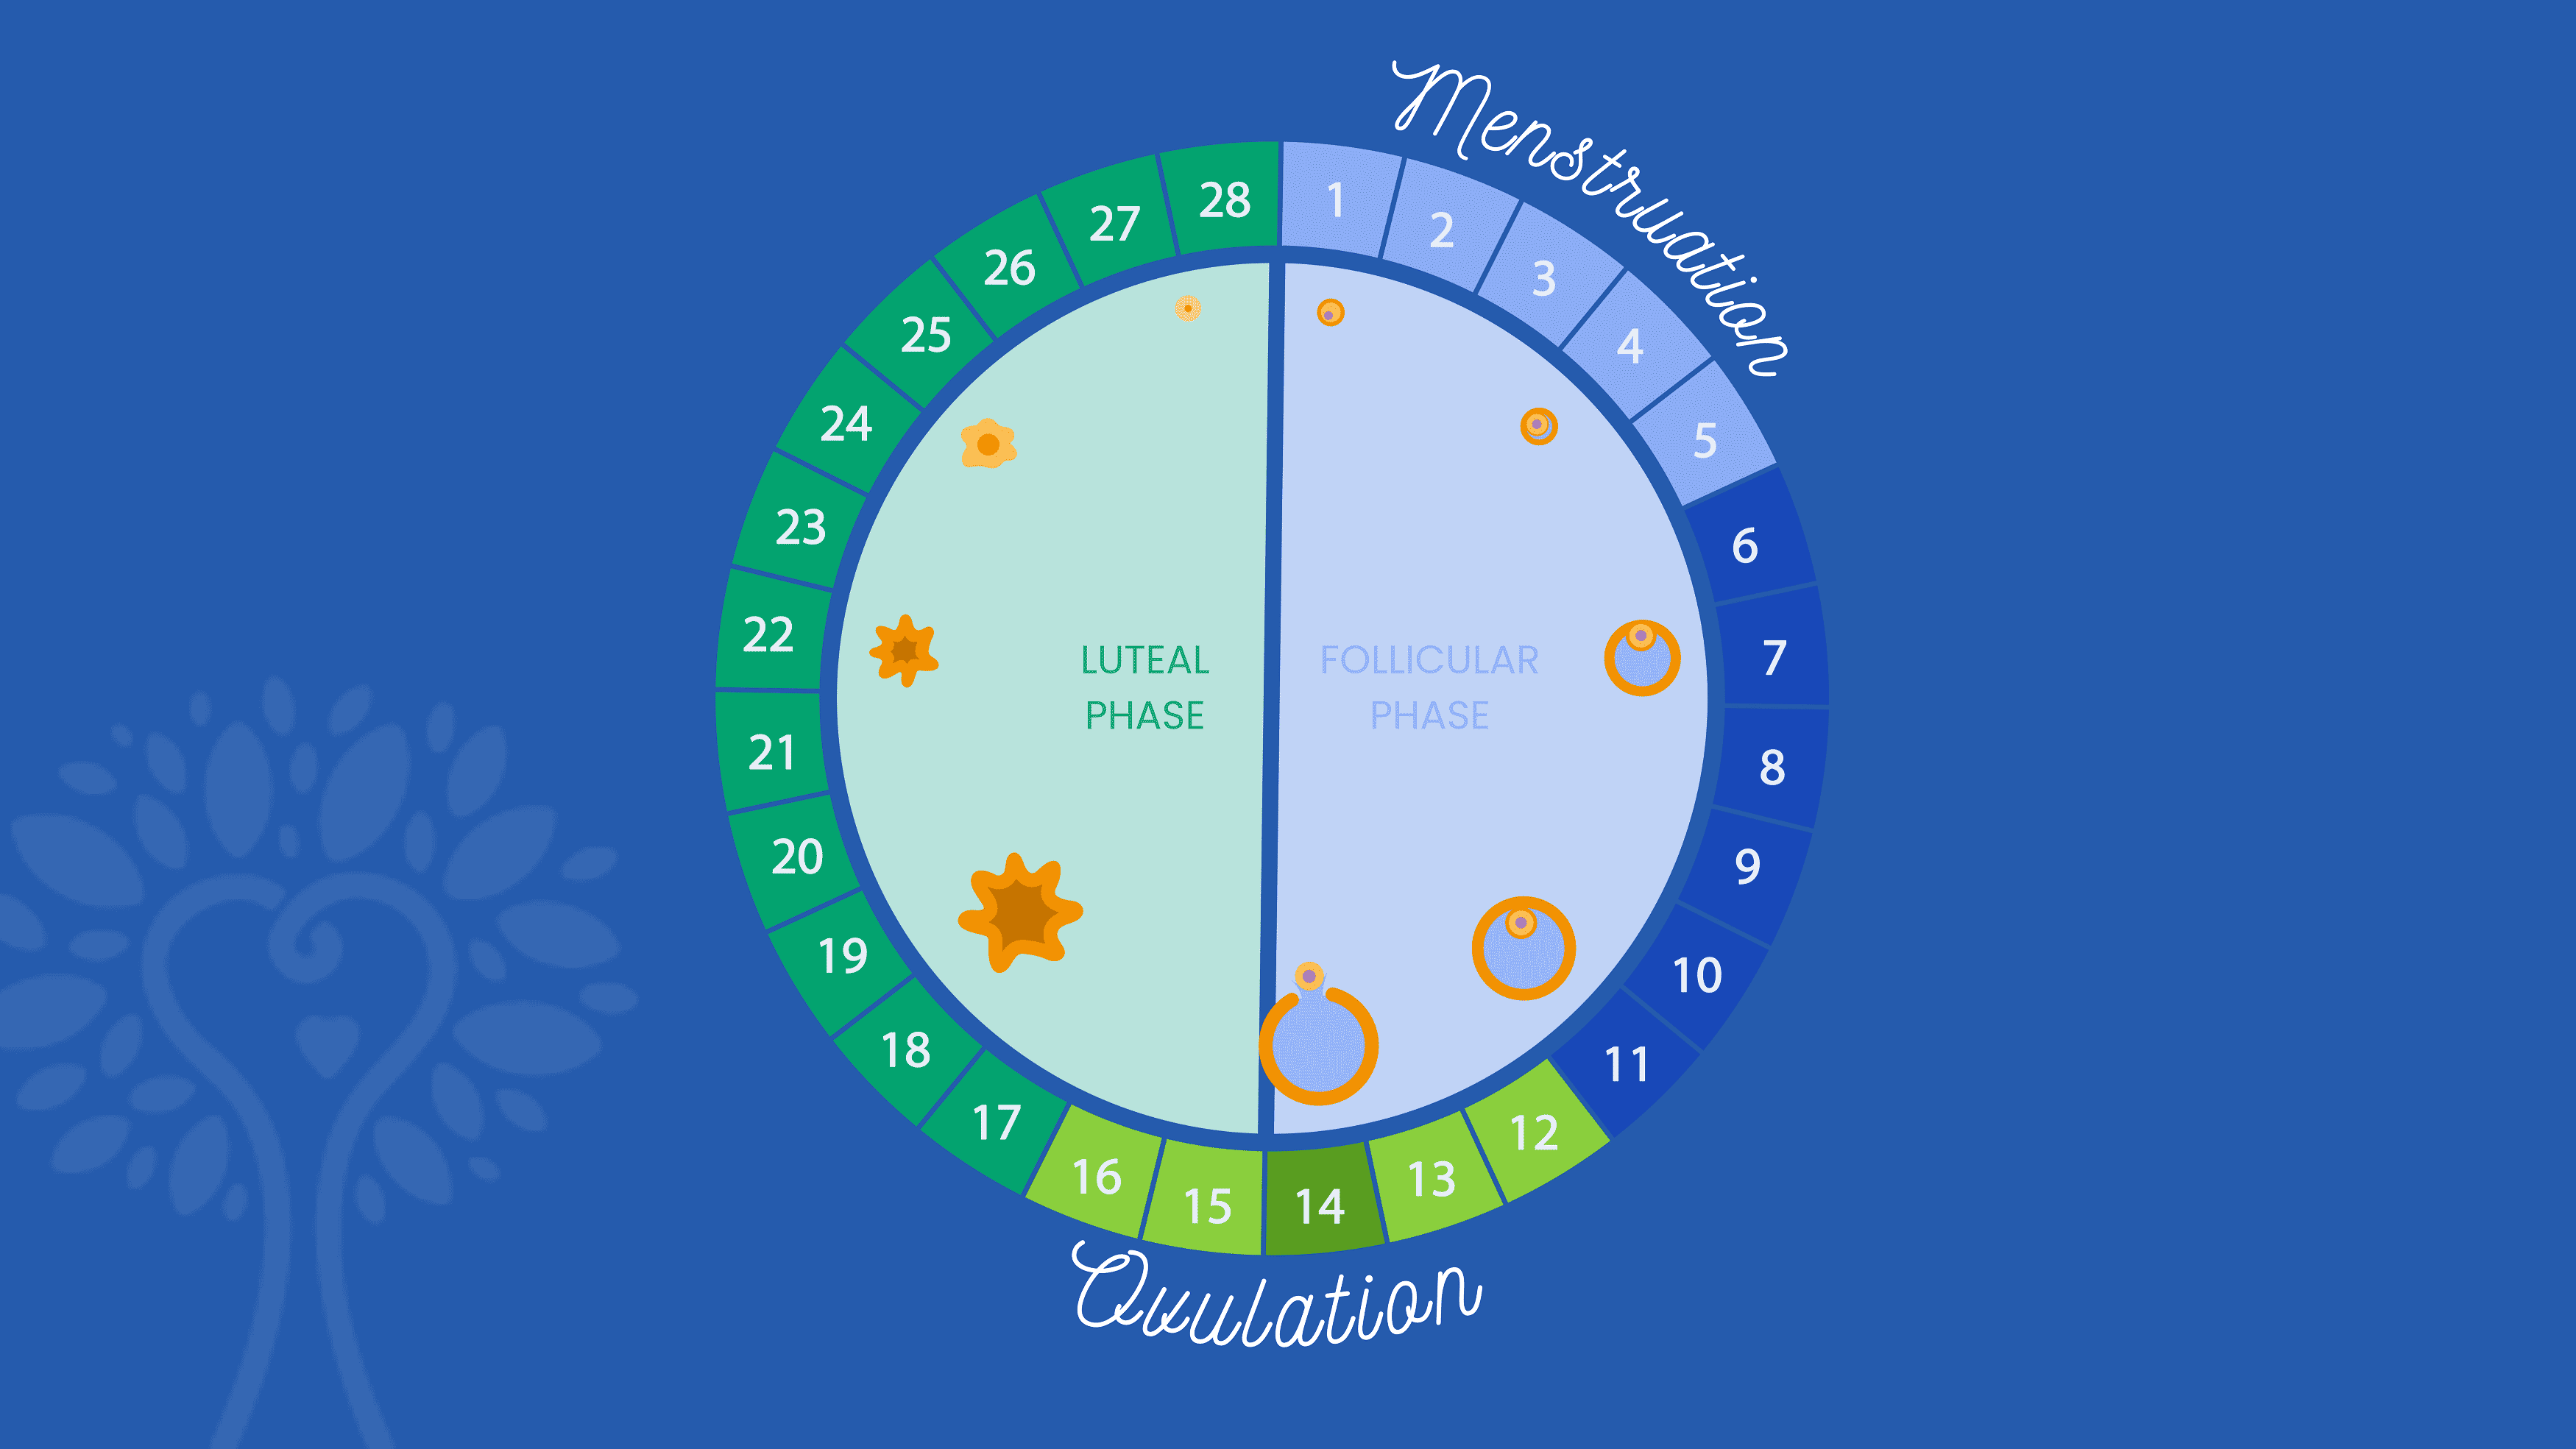 Темно-синий фон с круглым календарем ЭКО, показывающим 28 дней менструального цикла со словом «Менструация», охватывающим дни с 1 по 5, и словом «Овуляция», охватывающим дни с 12 по 16. Цифры окрашены в разные оттенки синего и зеленого цвета в зависимости от их фаза.